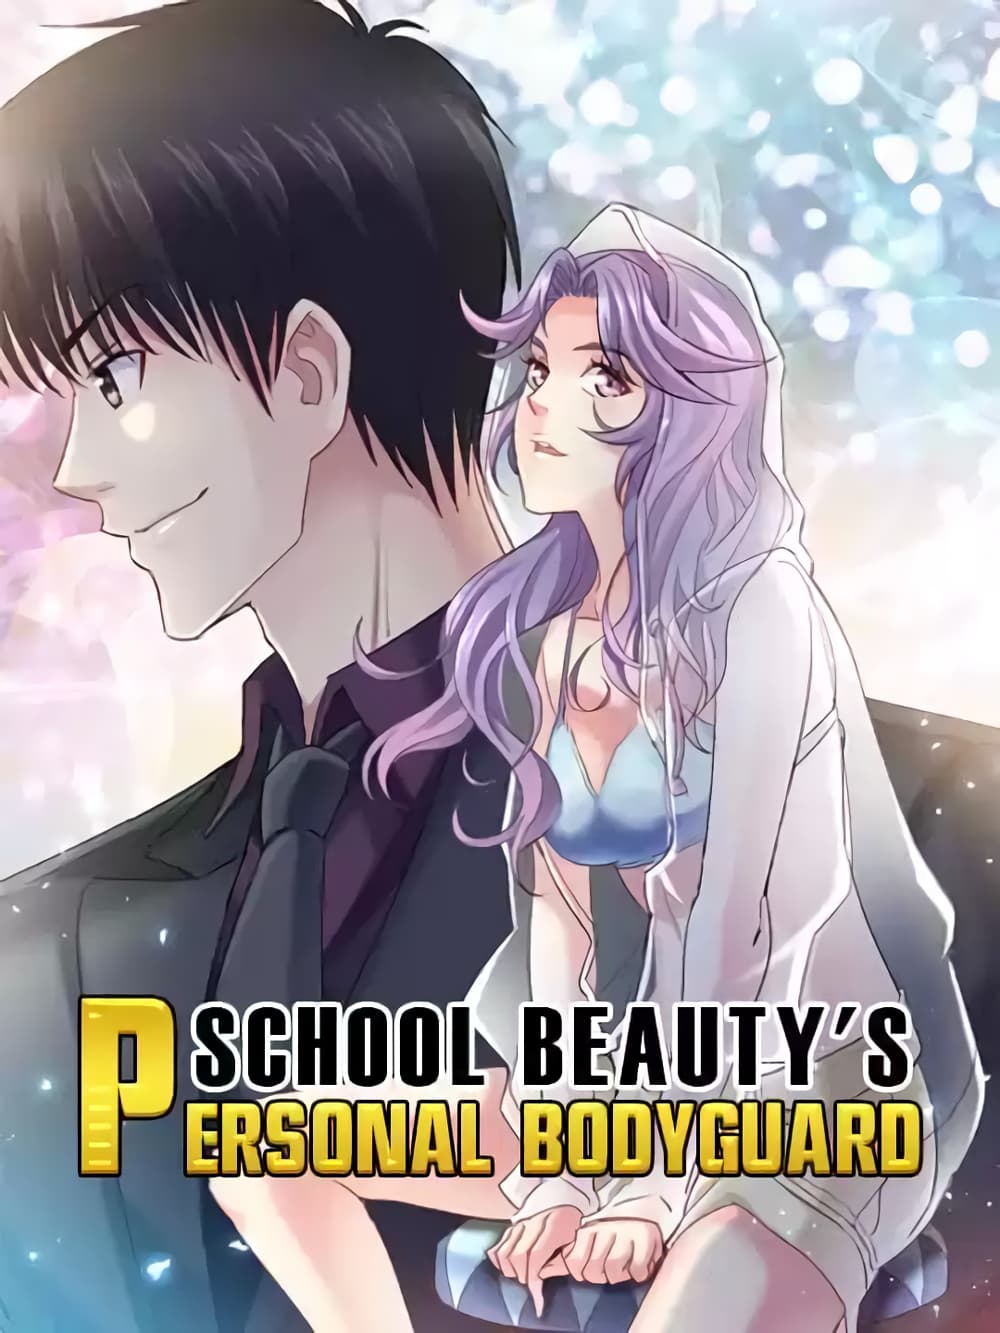 School Beauty's Bodyguard 293 (1)